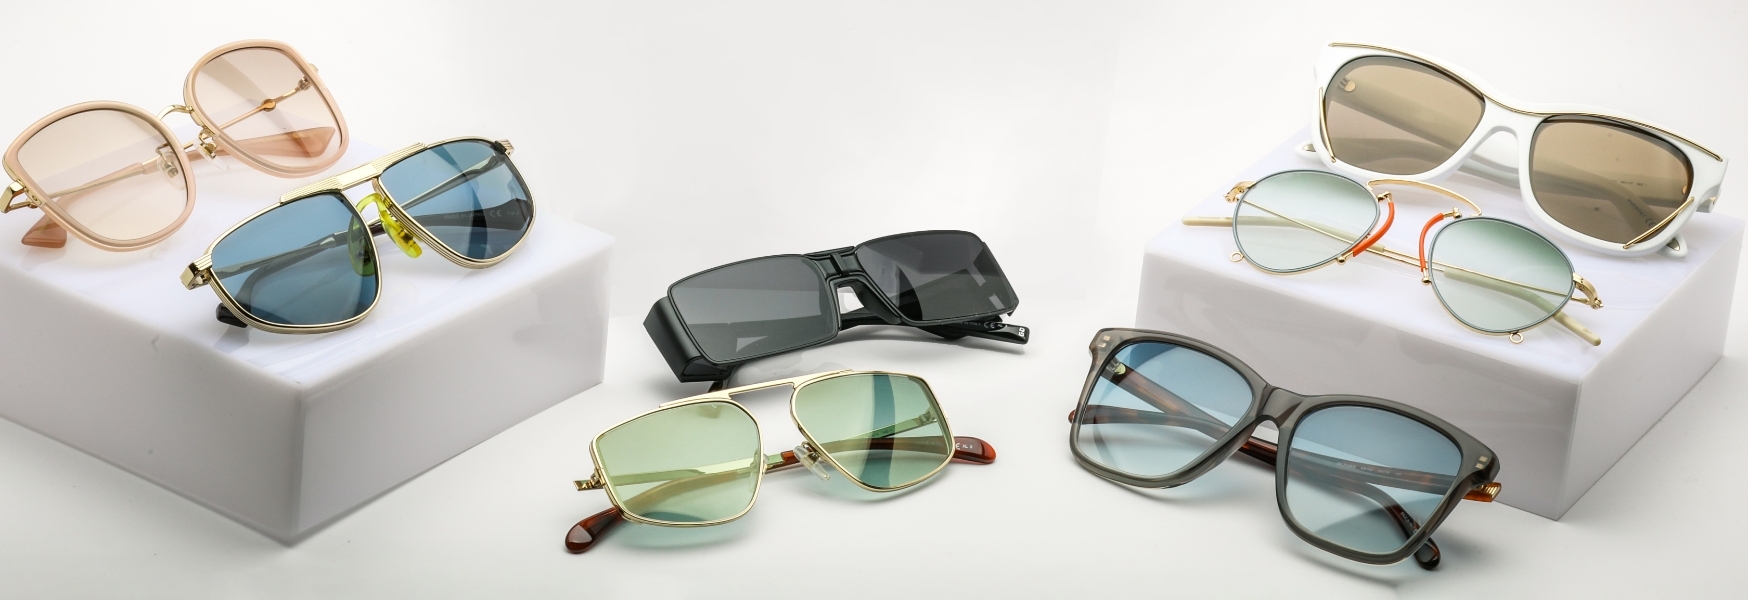 Why Choose NYWD As Your Wholesale Designer Eyewear Distributor?